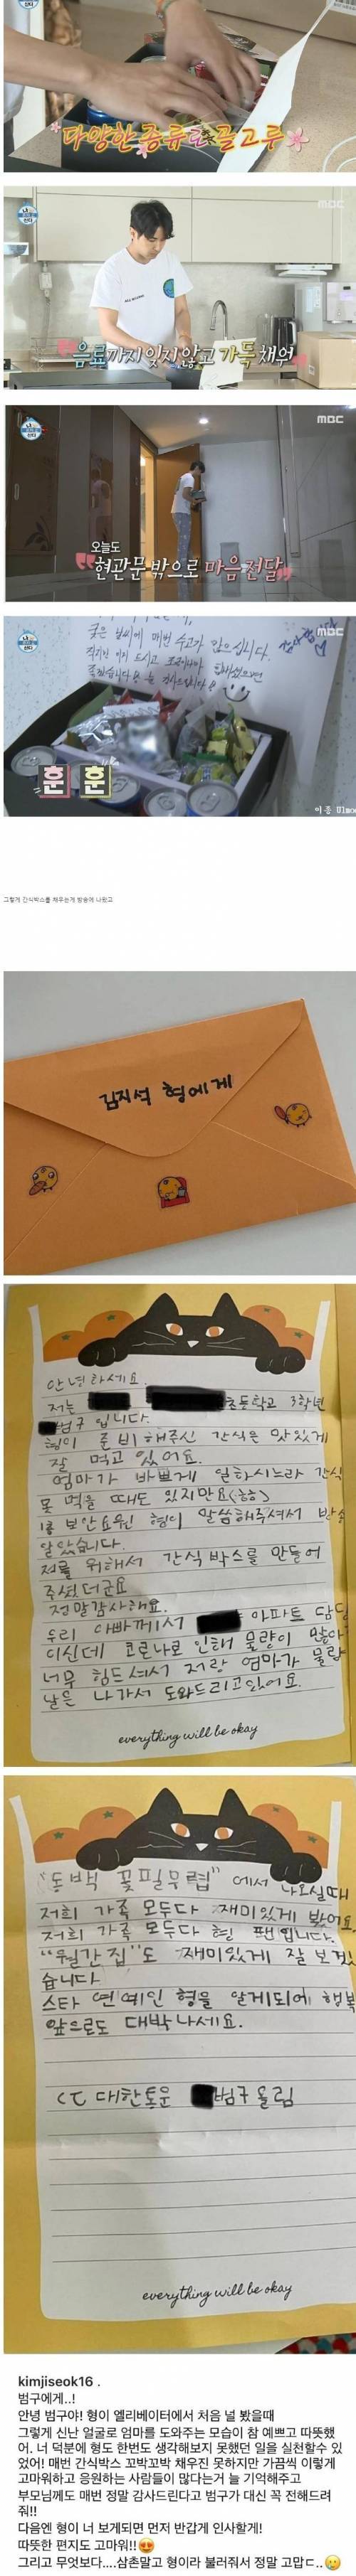 [스압] 배우 김지석이 받은 편지.jpg